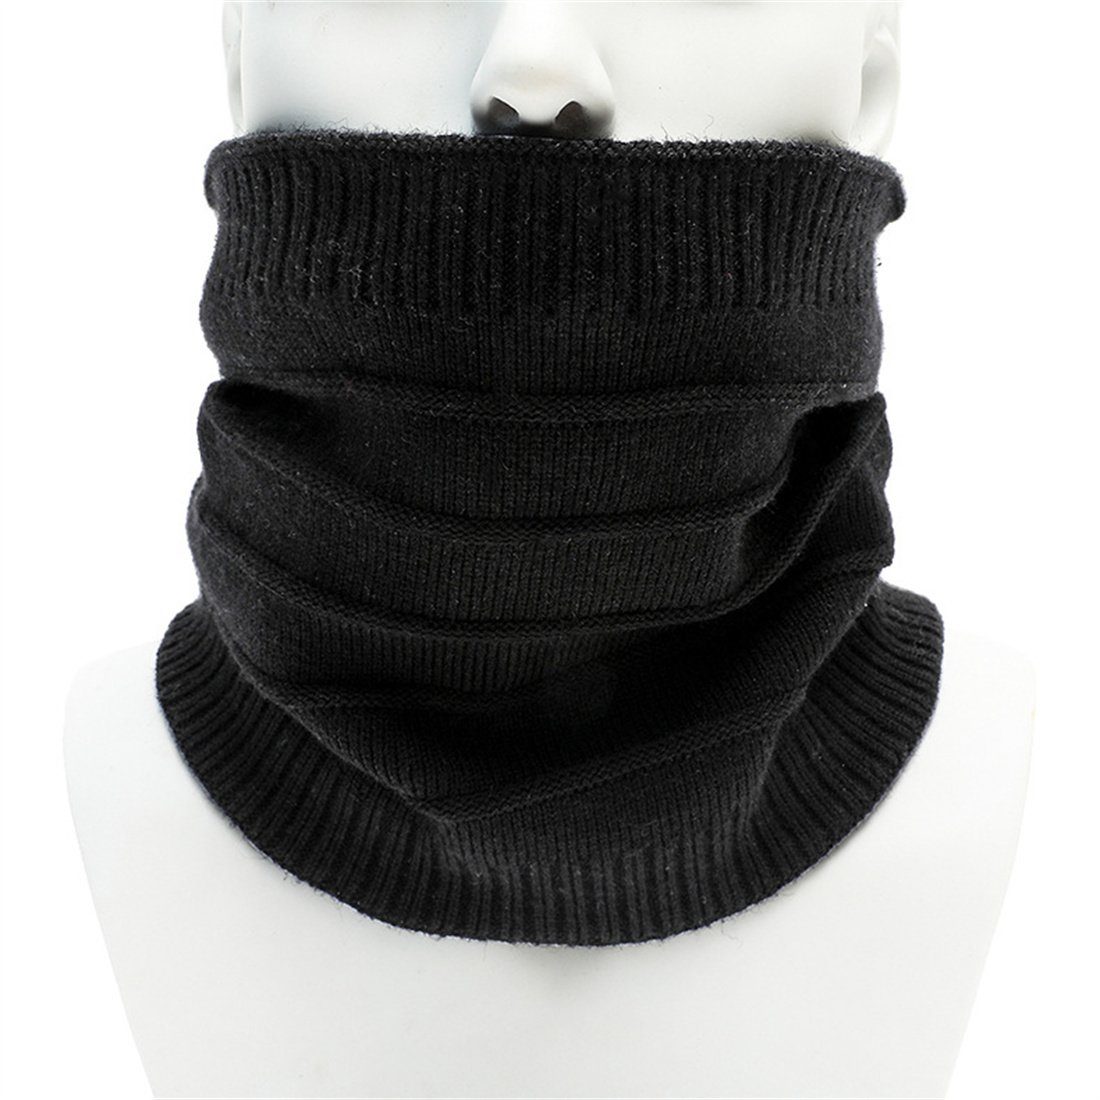 DÖRÖY Modeschal Unisex einfarbiger warmer gestreifter Schal, gestrickte Halsbedeckung Schwarz